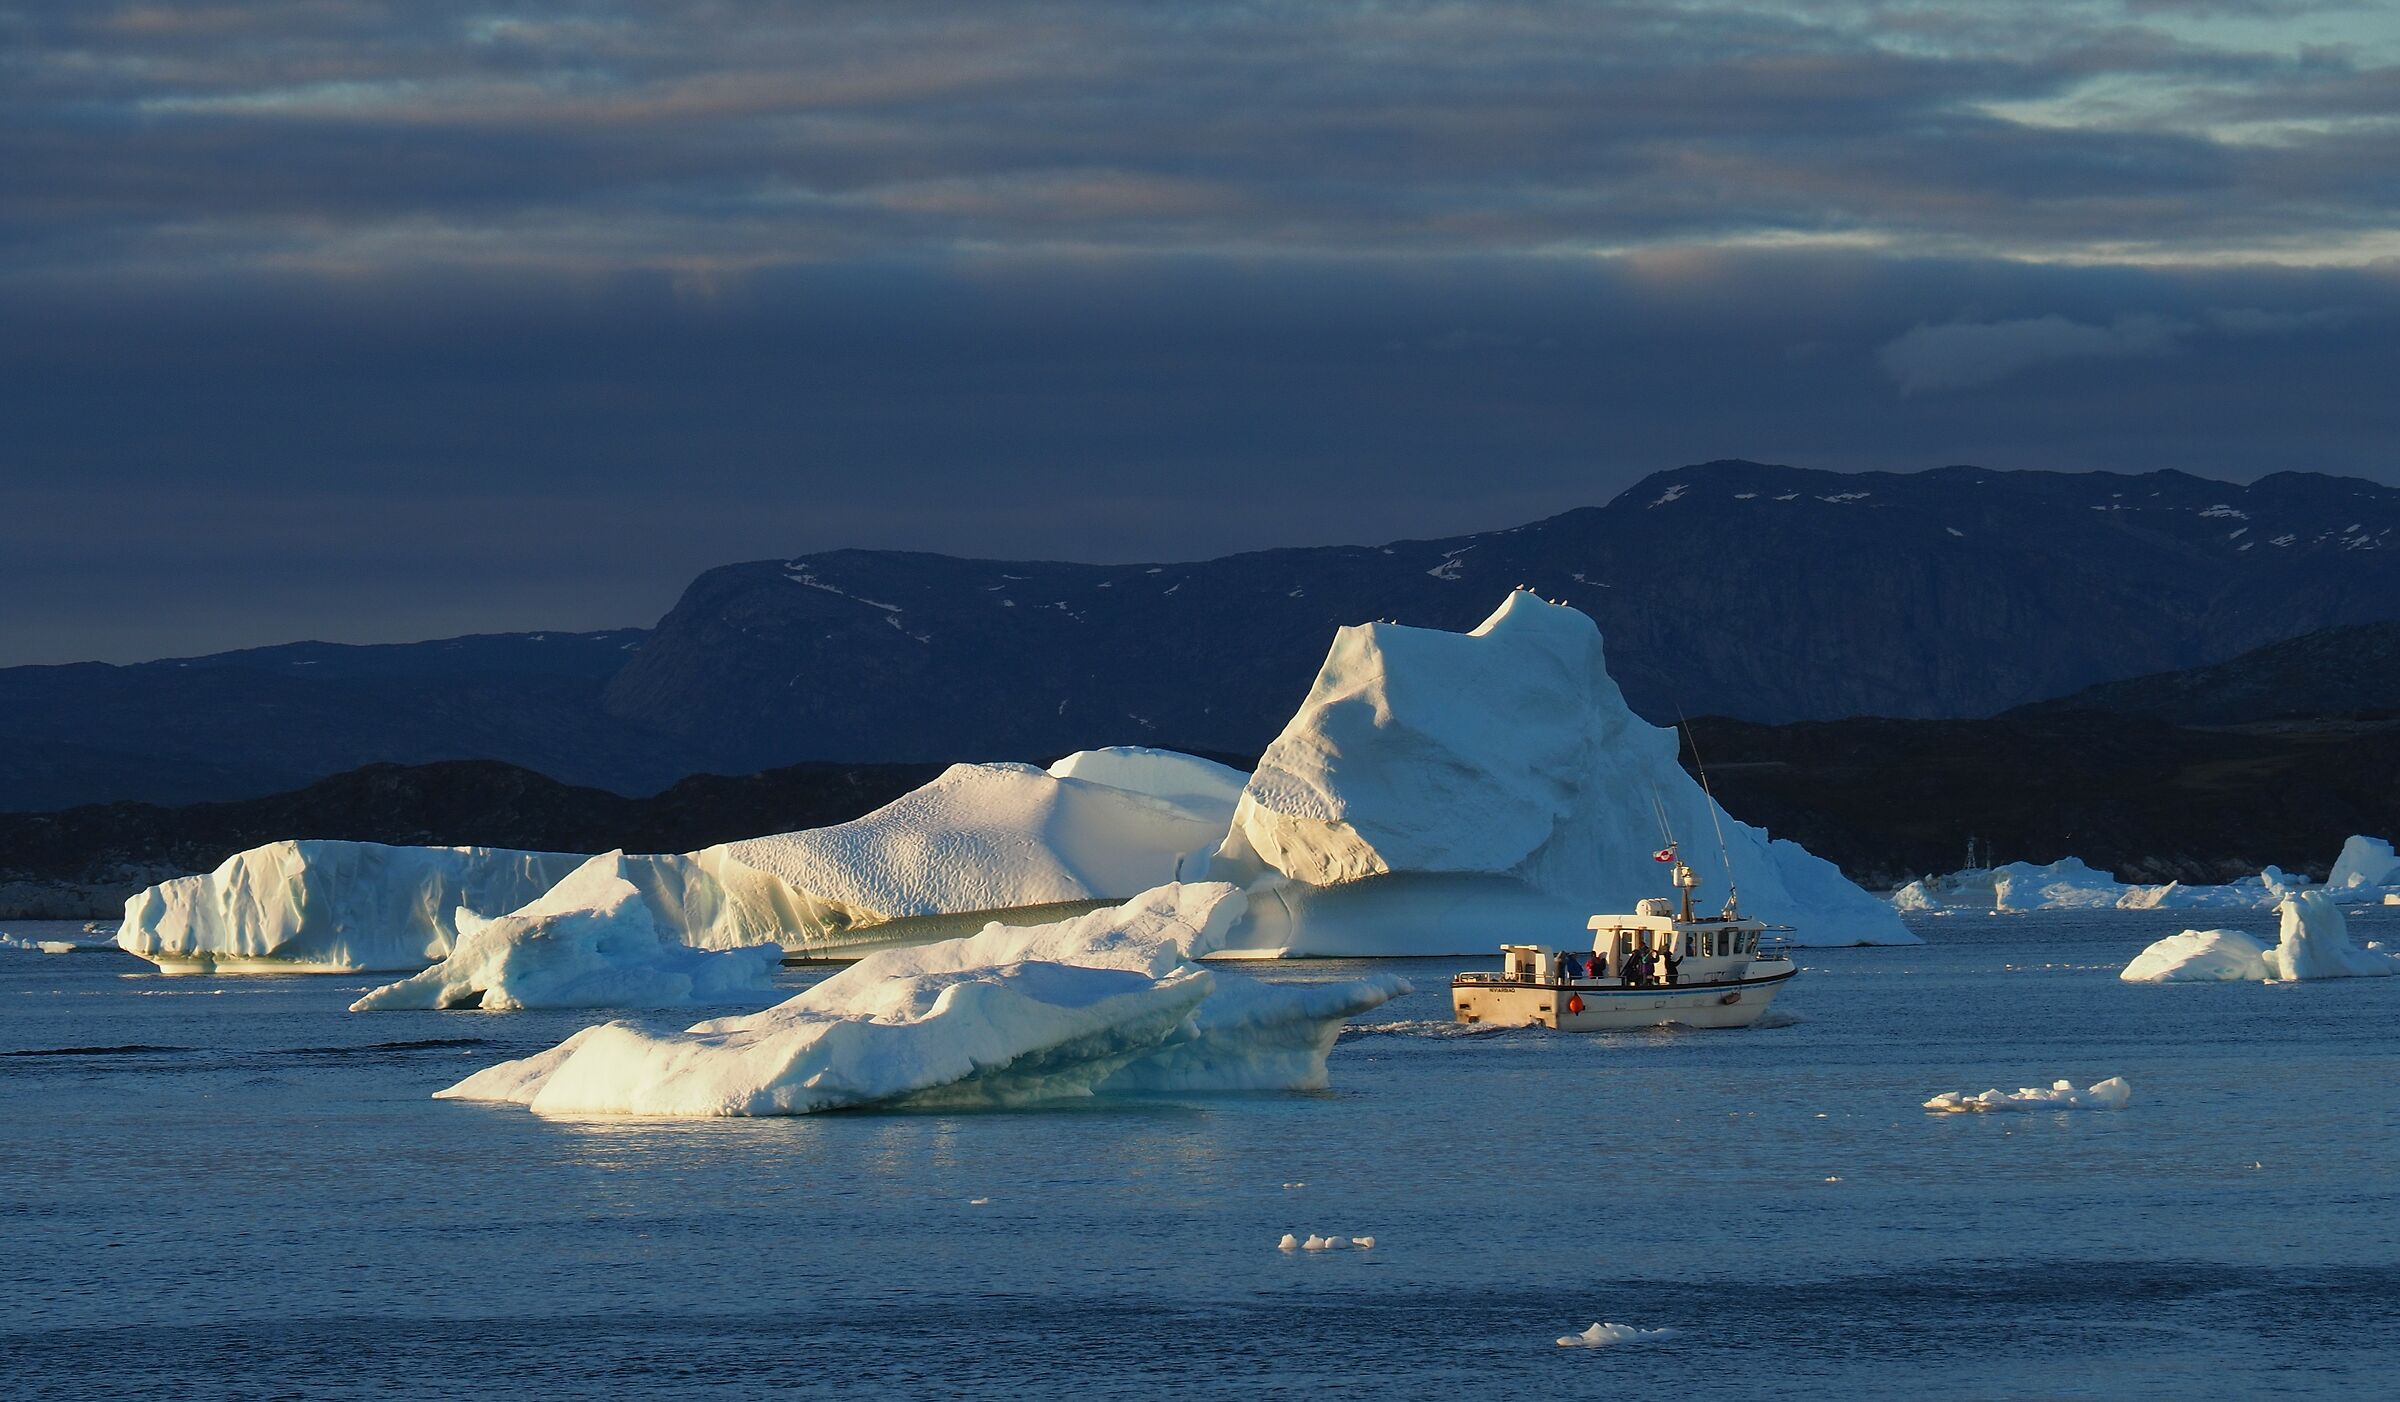 among the icebergs...